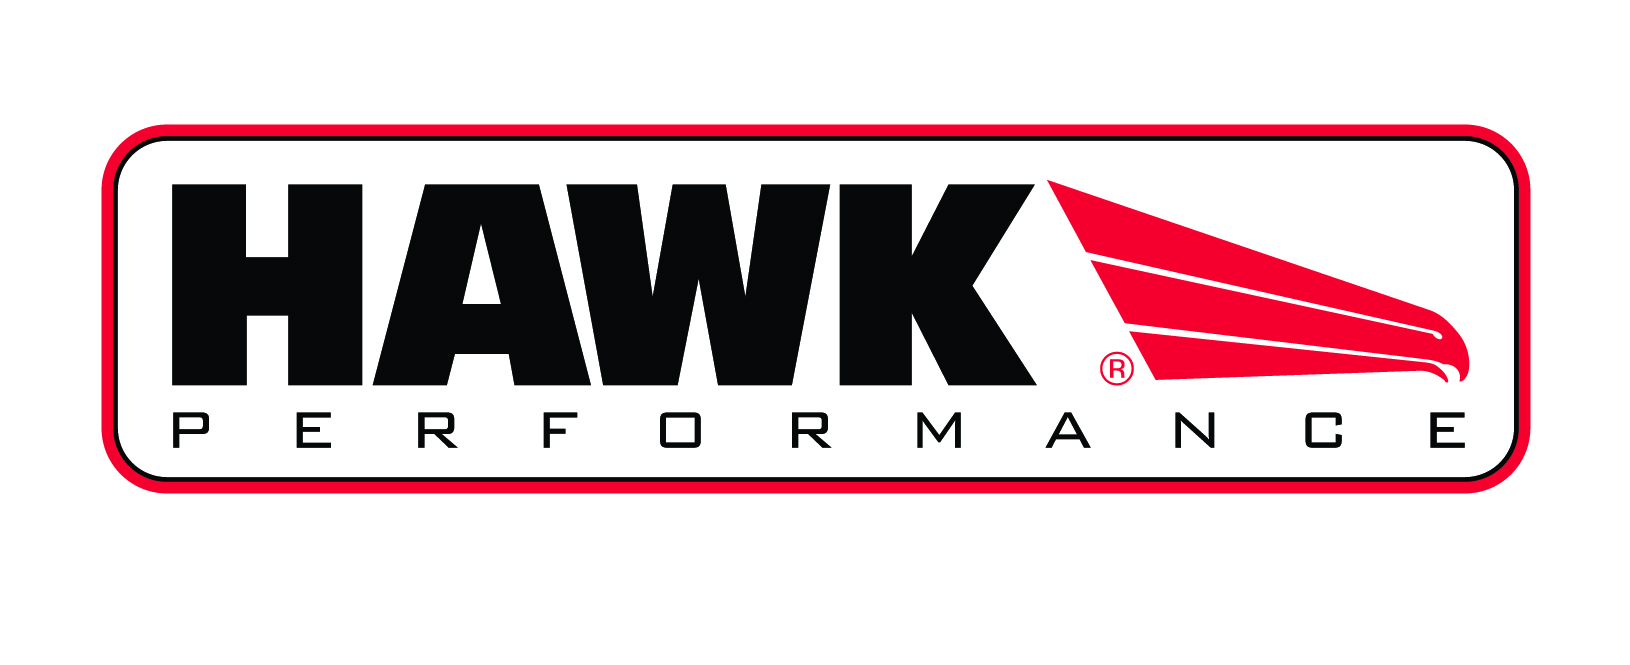 Brzdové kotouče Hawk Performance Ford